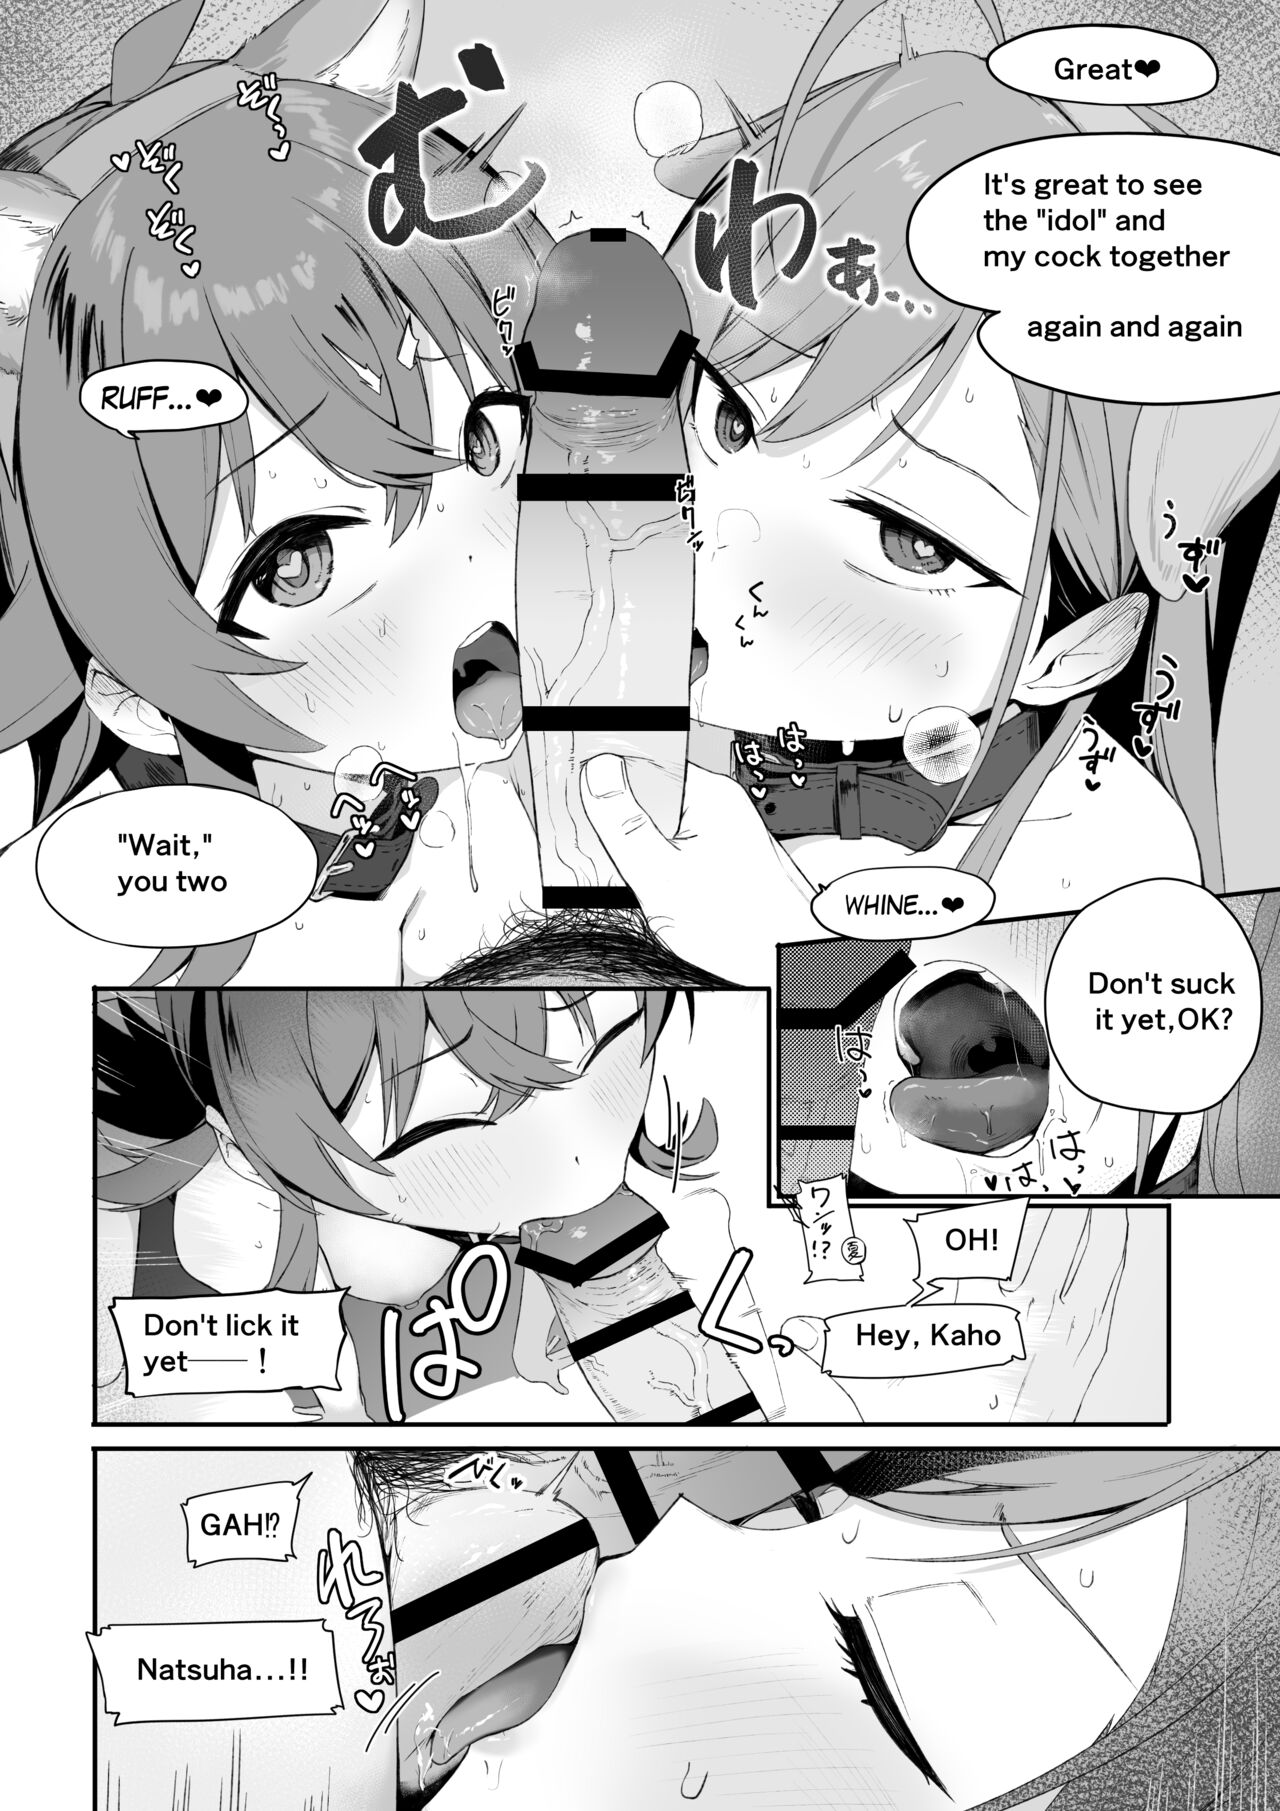 Blowjob manga